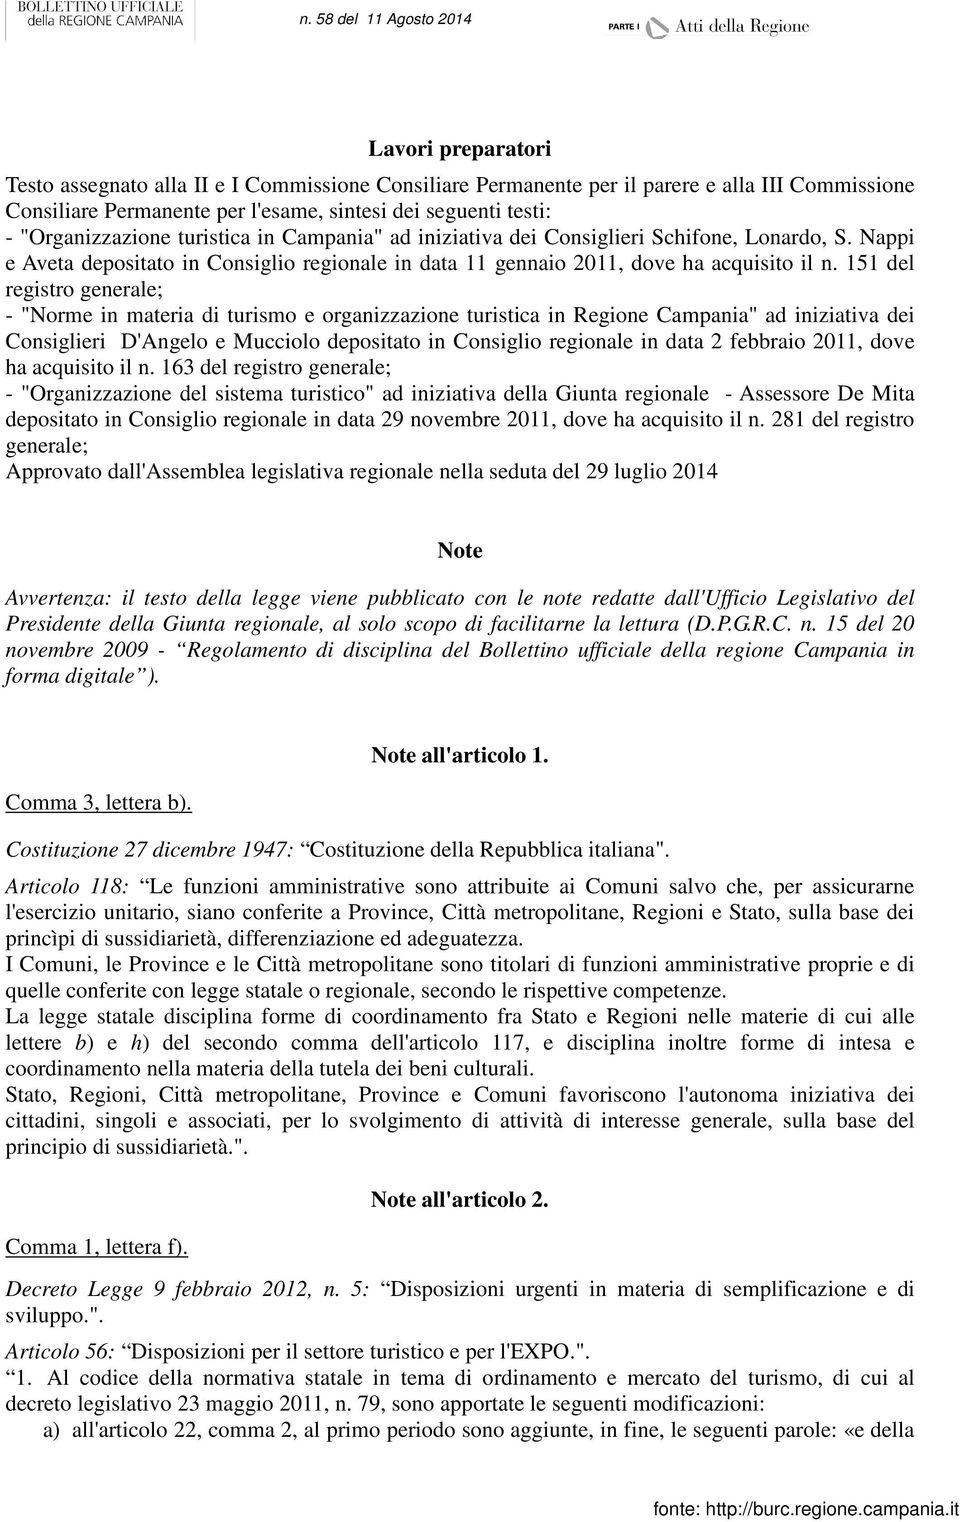 151 del registro generale; - "Norme in materia di turismo e organizzazione turistica in Regione Campania" ad iniziativa dei Consiglieri D'Angelo e Mucciolo depositato in Consiglio regionale in data 2